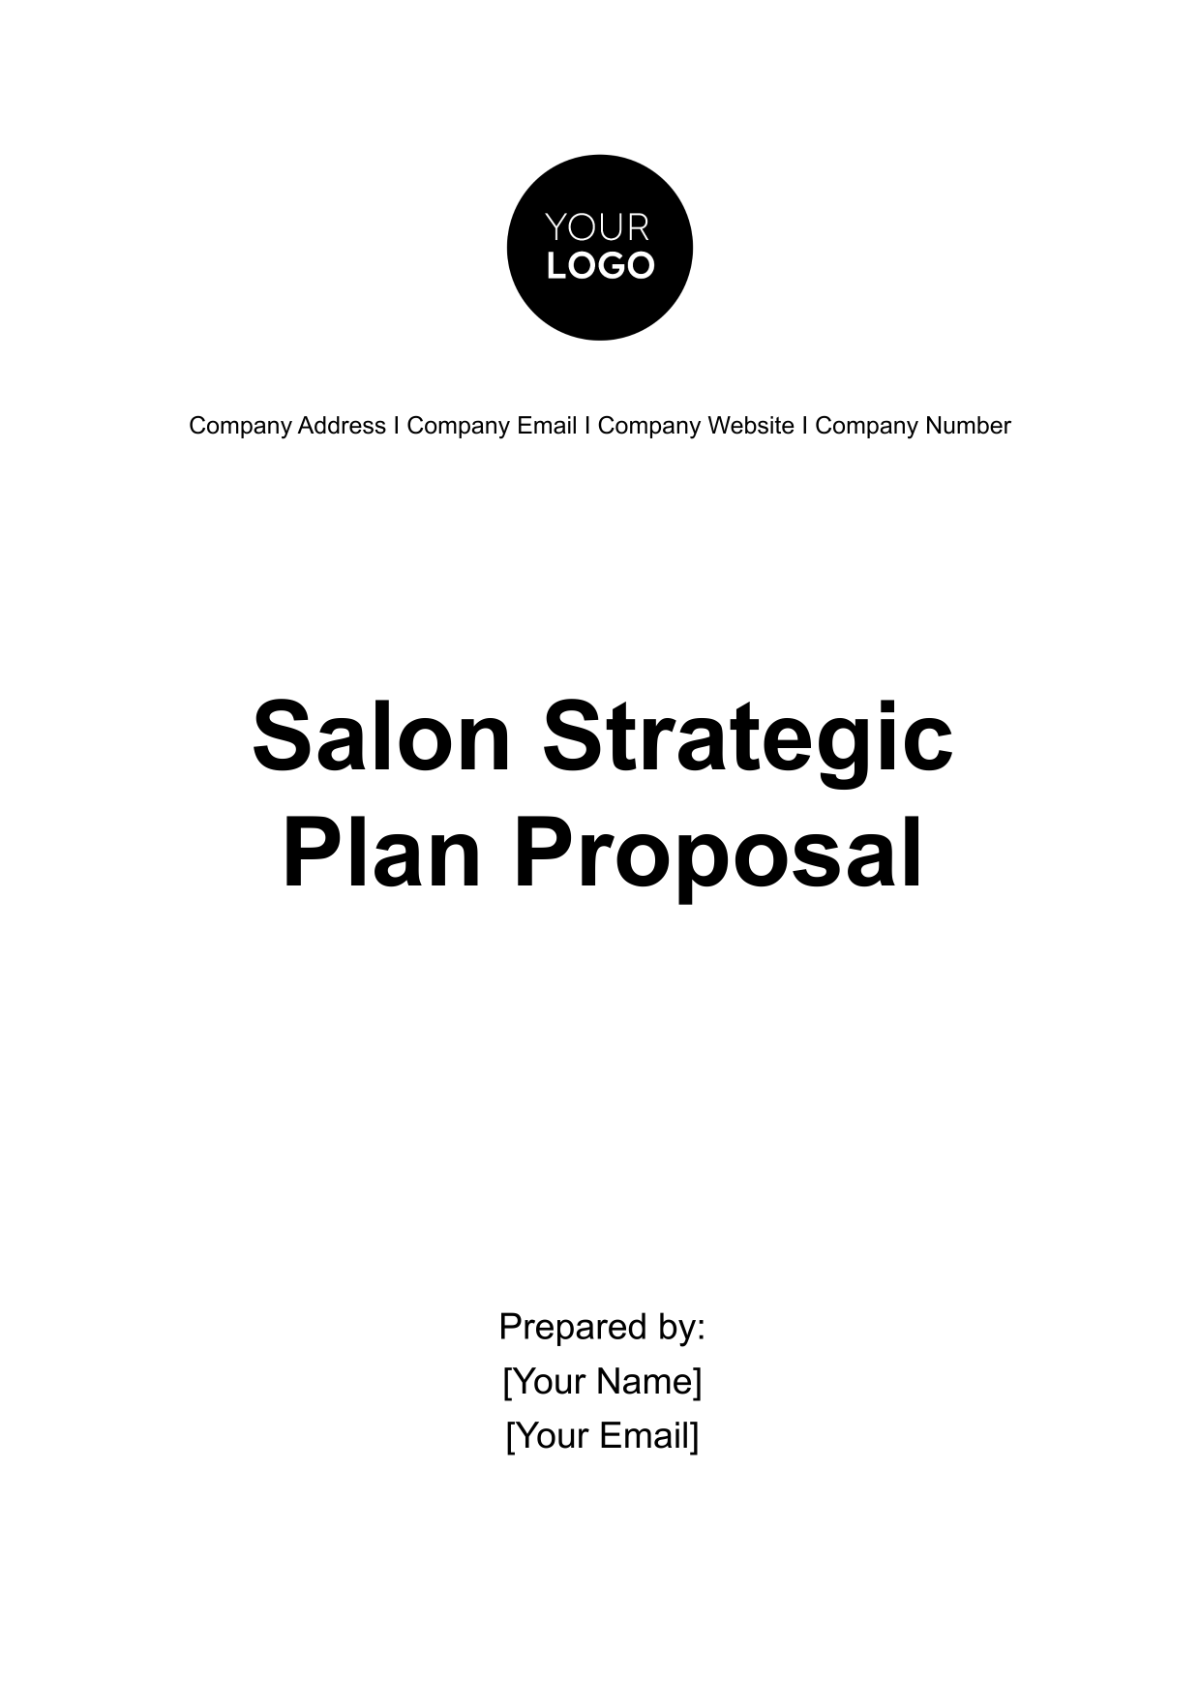 Salon Strategic Plan Proposal Template